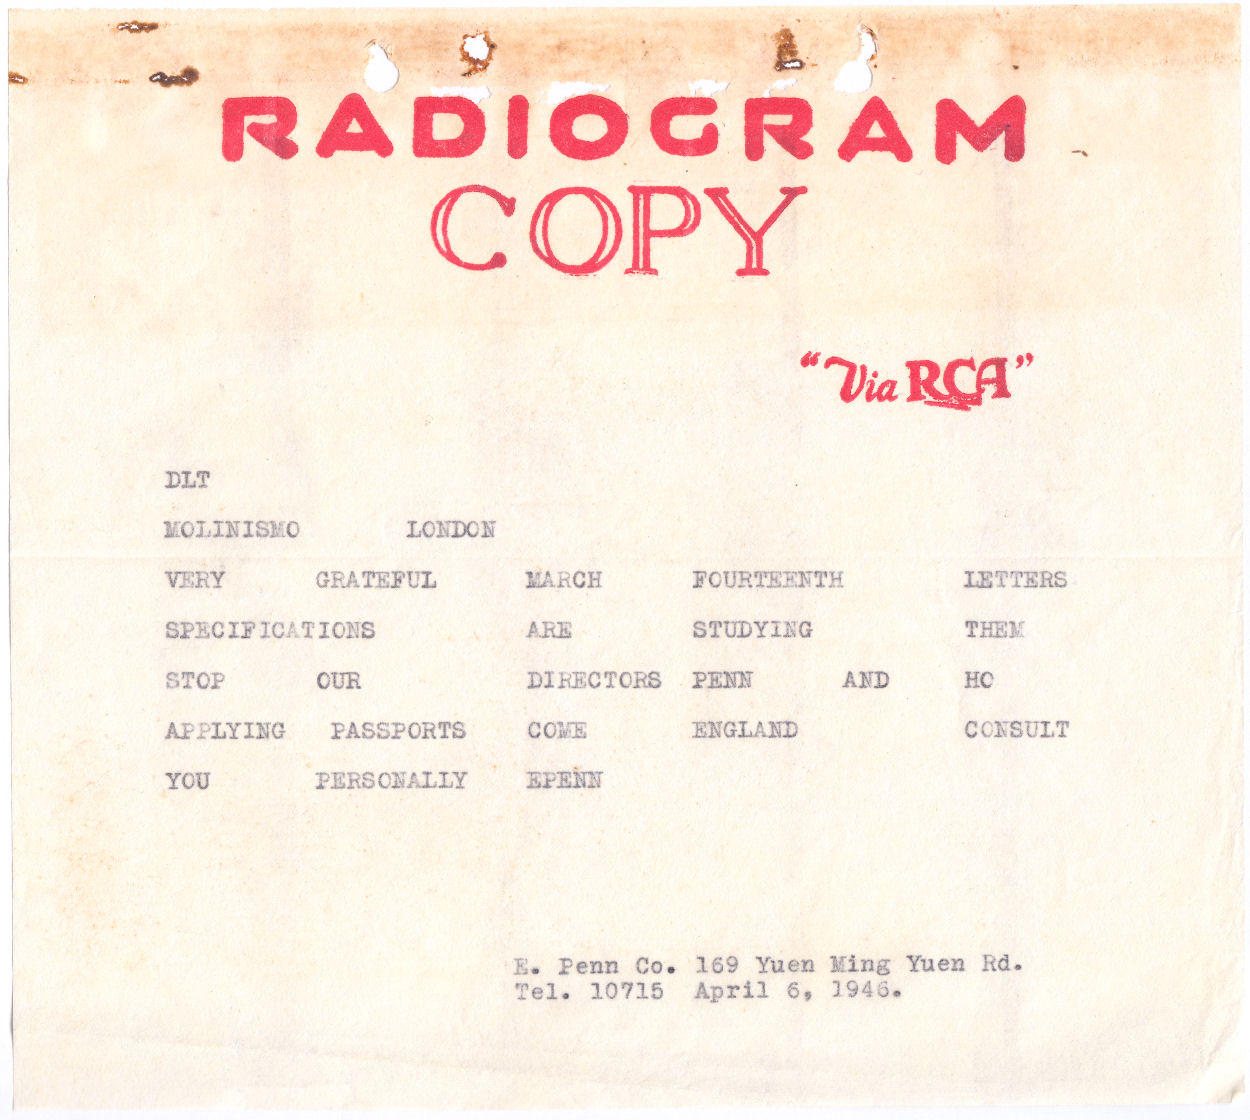 Radiogram copy Via RCA